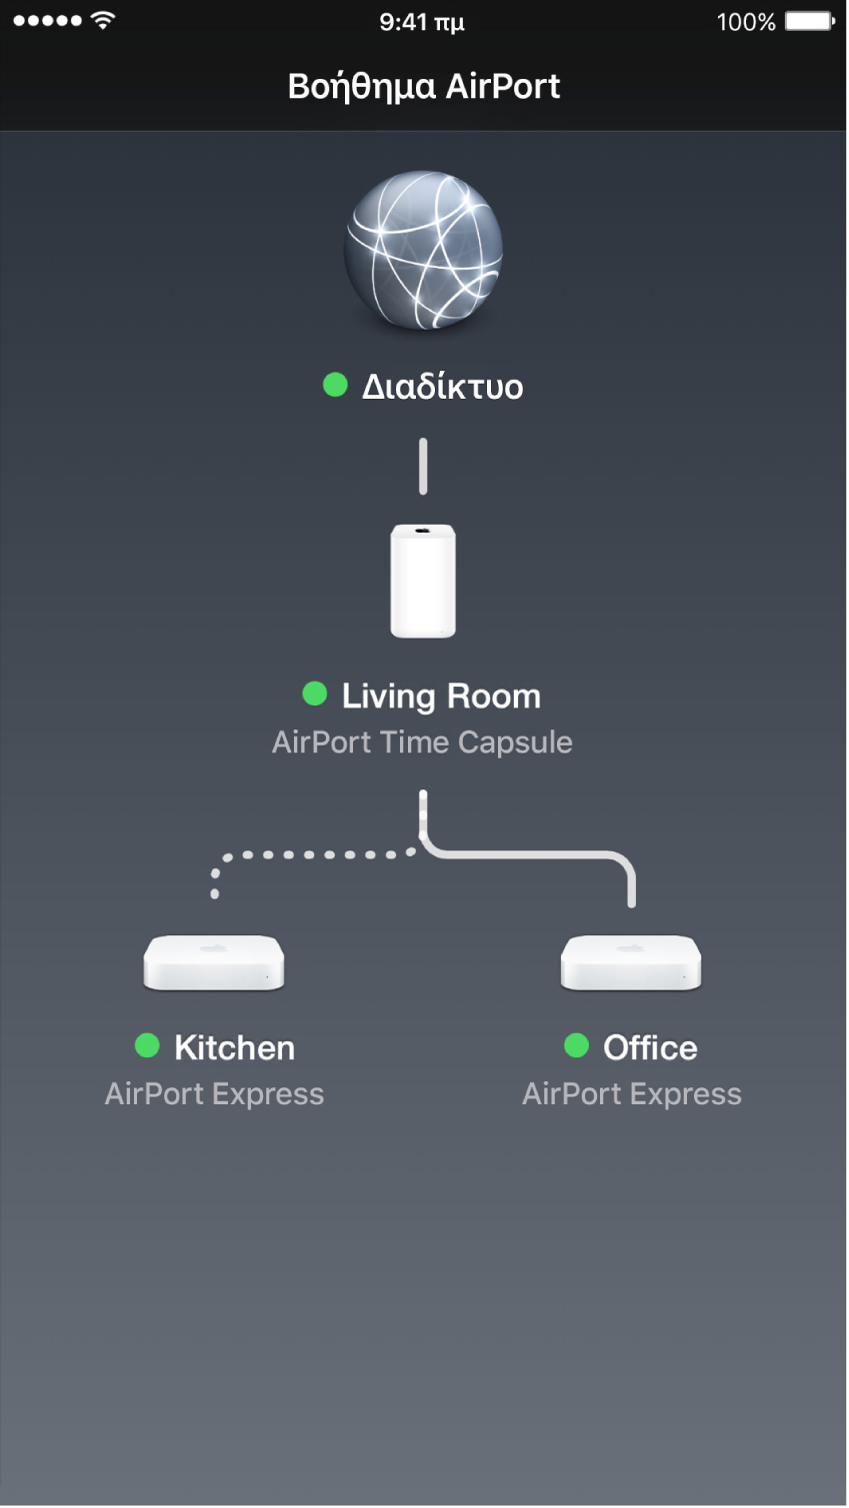 Η γραφική επισκόπηση στο Βοήθημα AirPort για iOS.